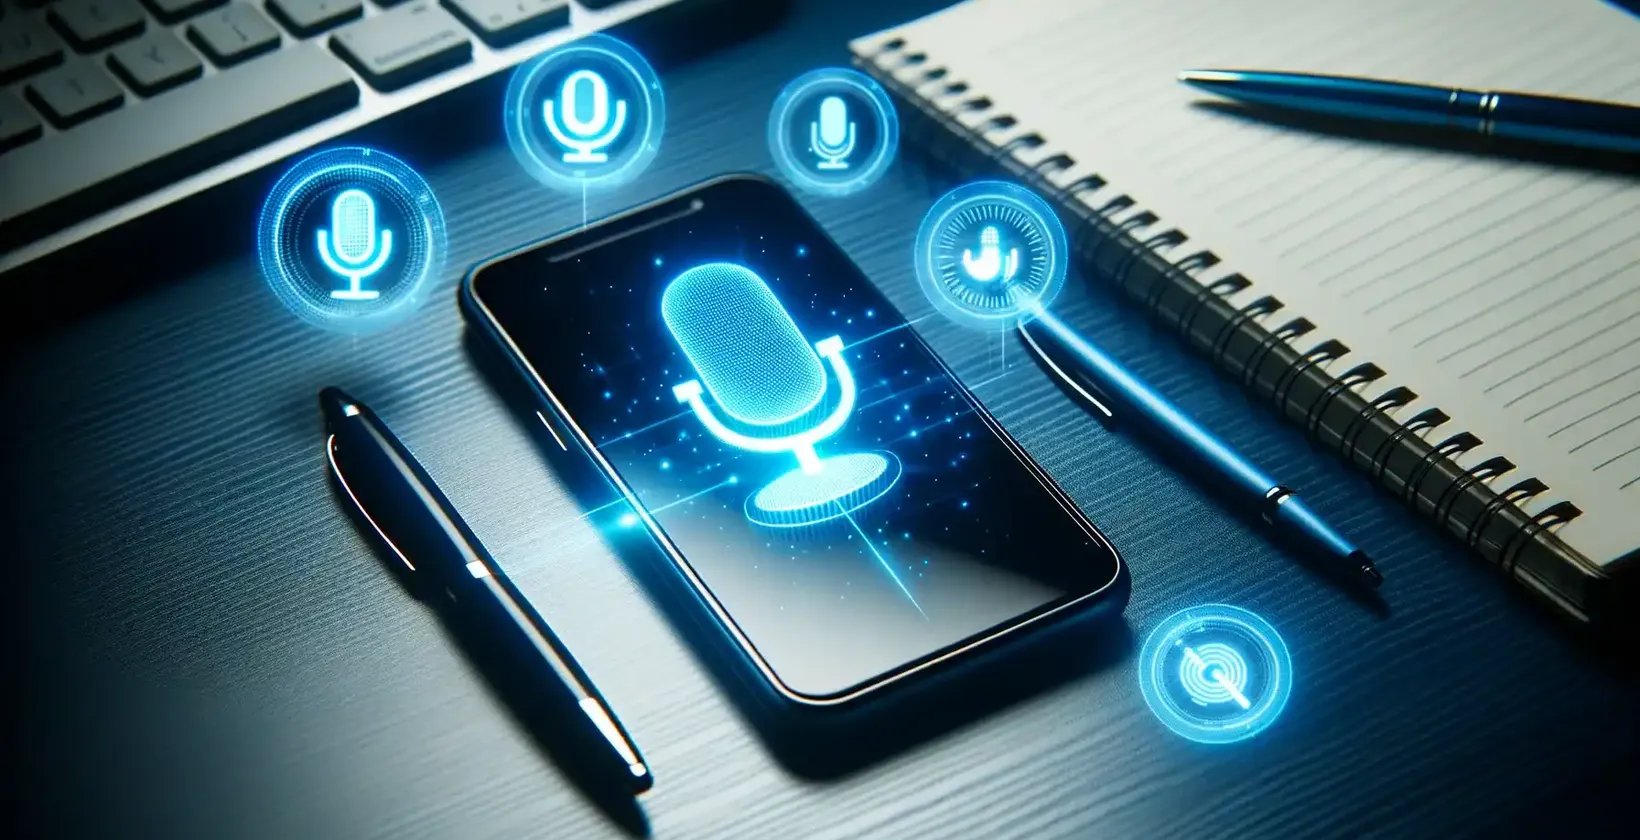 Tilføj tekst til video på Samsung-enheder illustreret ved en Samsung-smartphone, der viser stemmekommandosymboler på et skrivebord